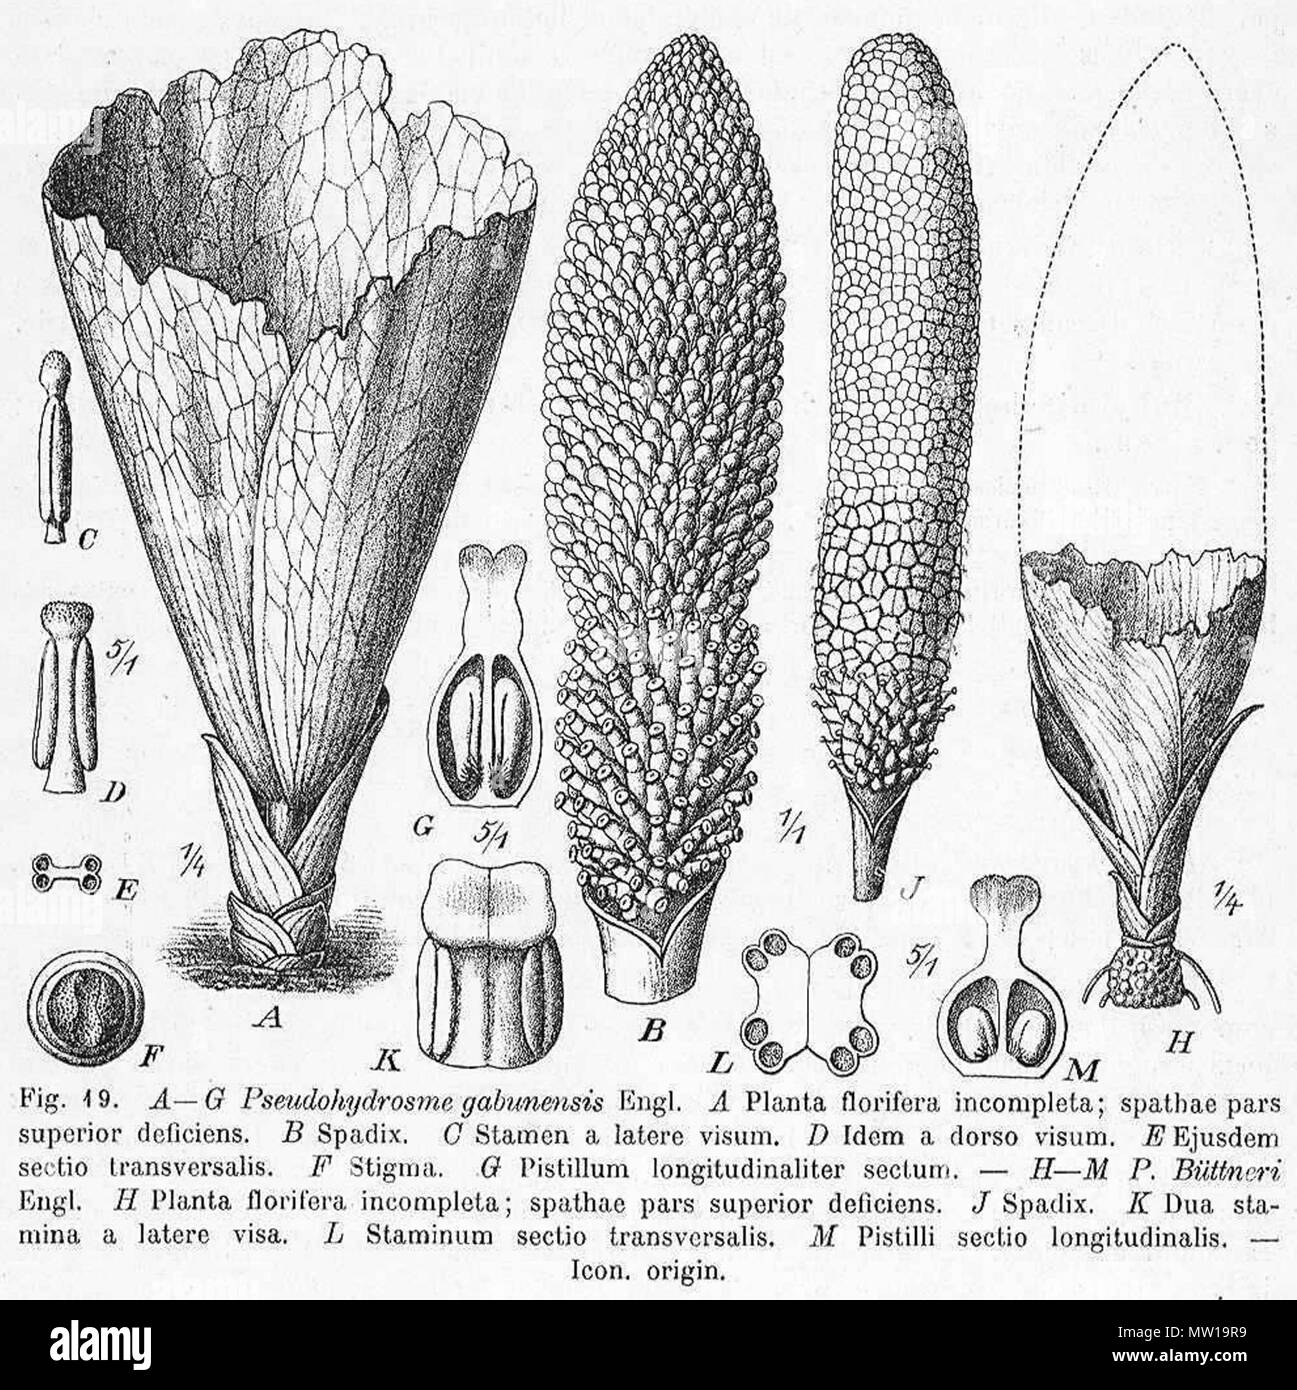 . English: Pseudohydrosme gabunensis botanical drawing of Adolf Engler . 1920. Adolf Engler (d. 1930) 504 Pseudohydrosme gabunensis Engler drawing Stock Photo